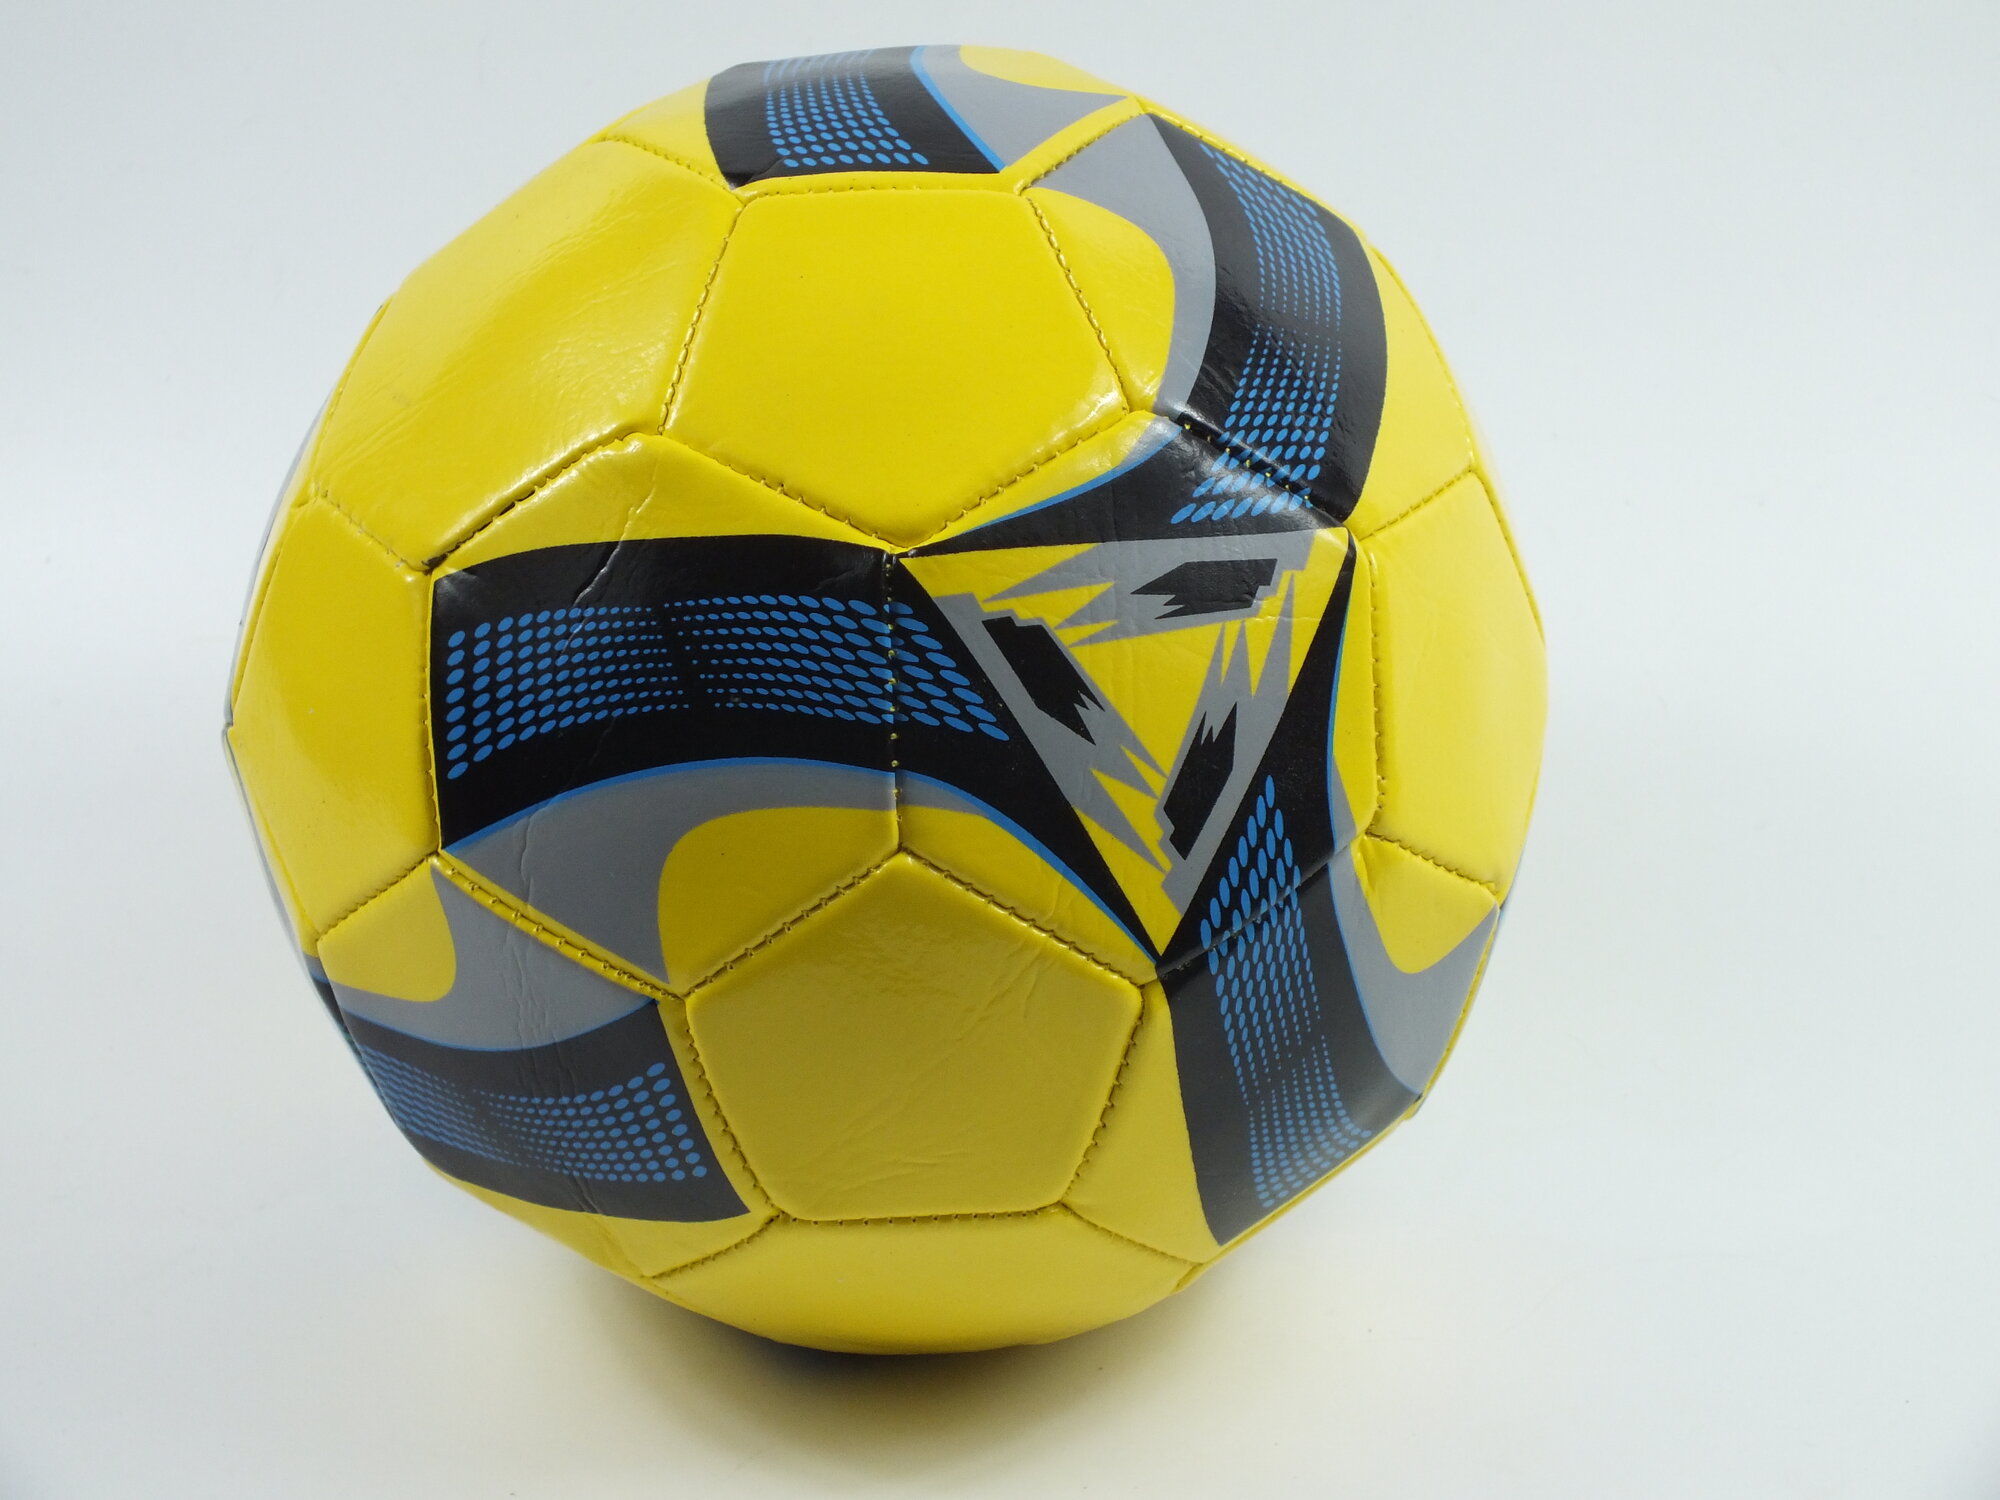 Мяч футбольный, машинная сшивка, PVC, размер 5, 290 г, (1 шт)желтый/синий